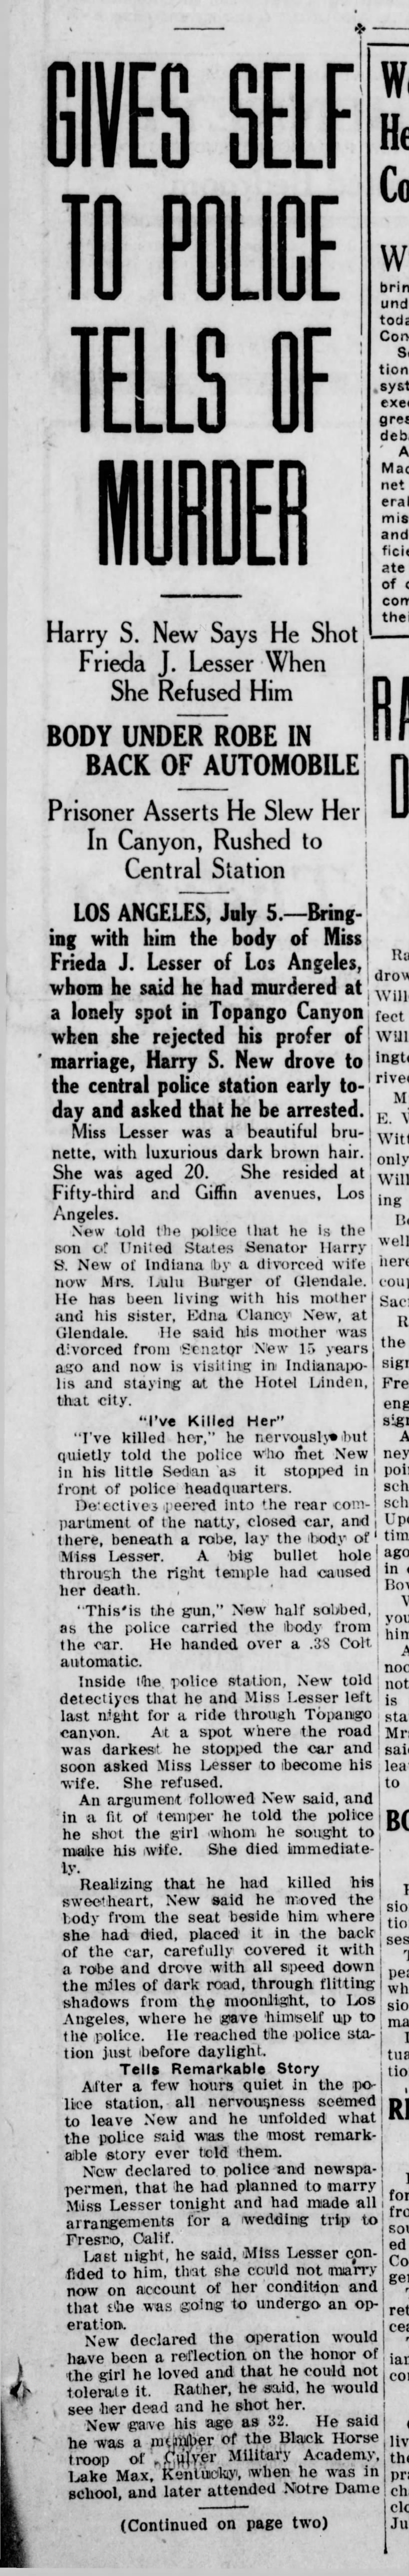 Harry S New Slains Girl Santa Ana Register, CA, 5 Jul 1919, pg 1